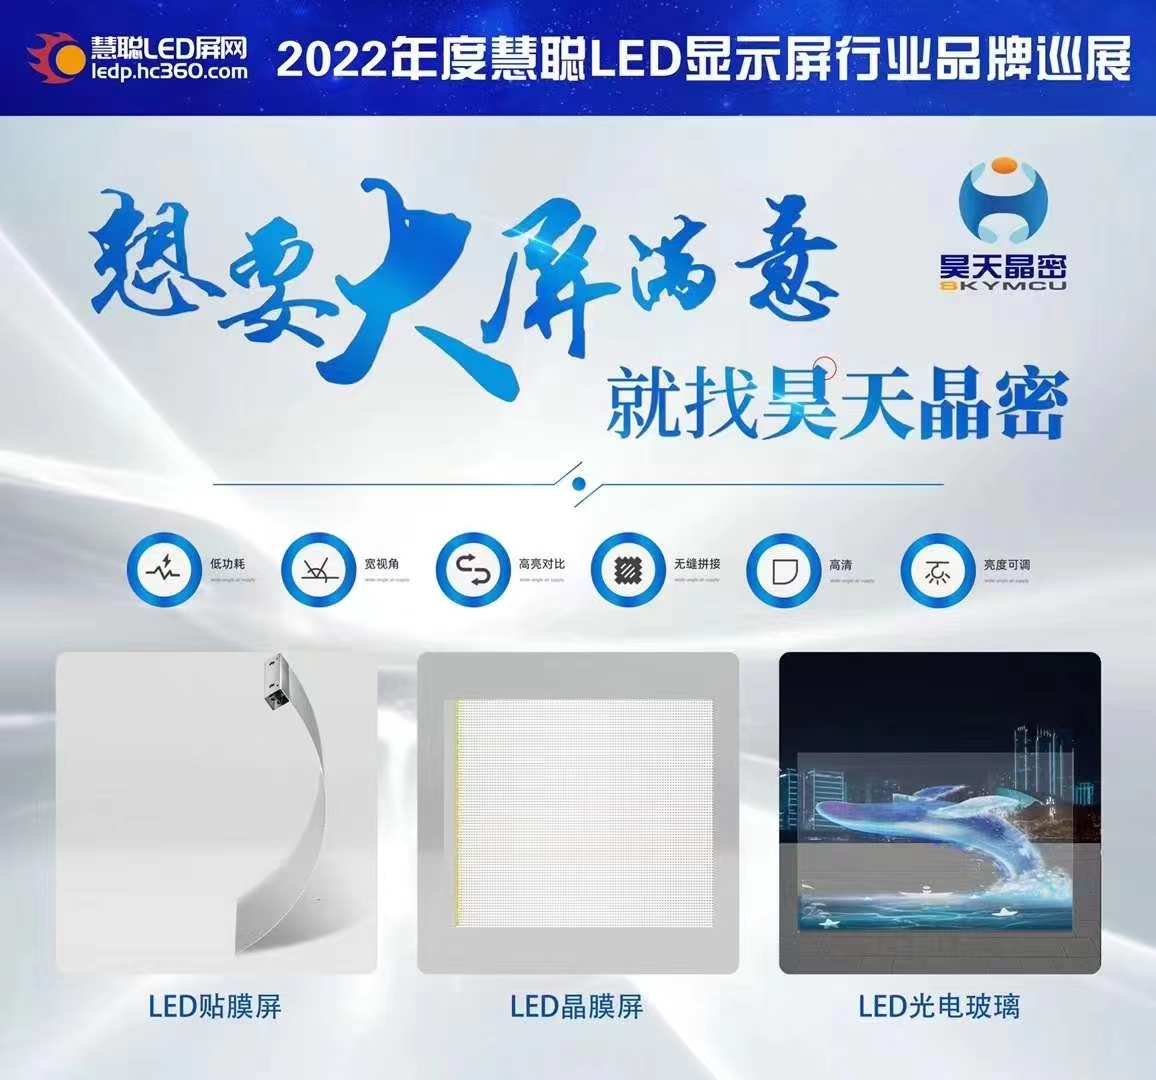 2022昊天電子產品全國巡展--武漢站 “定制透明方案一體化解決服務商，讓透明不拘一格”